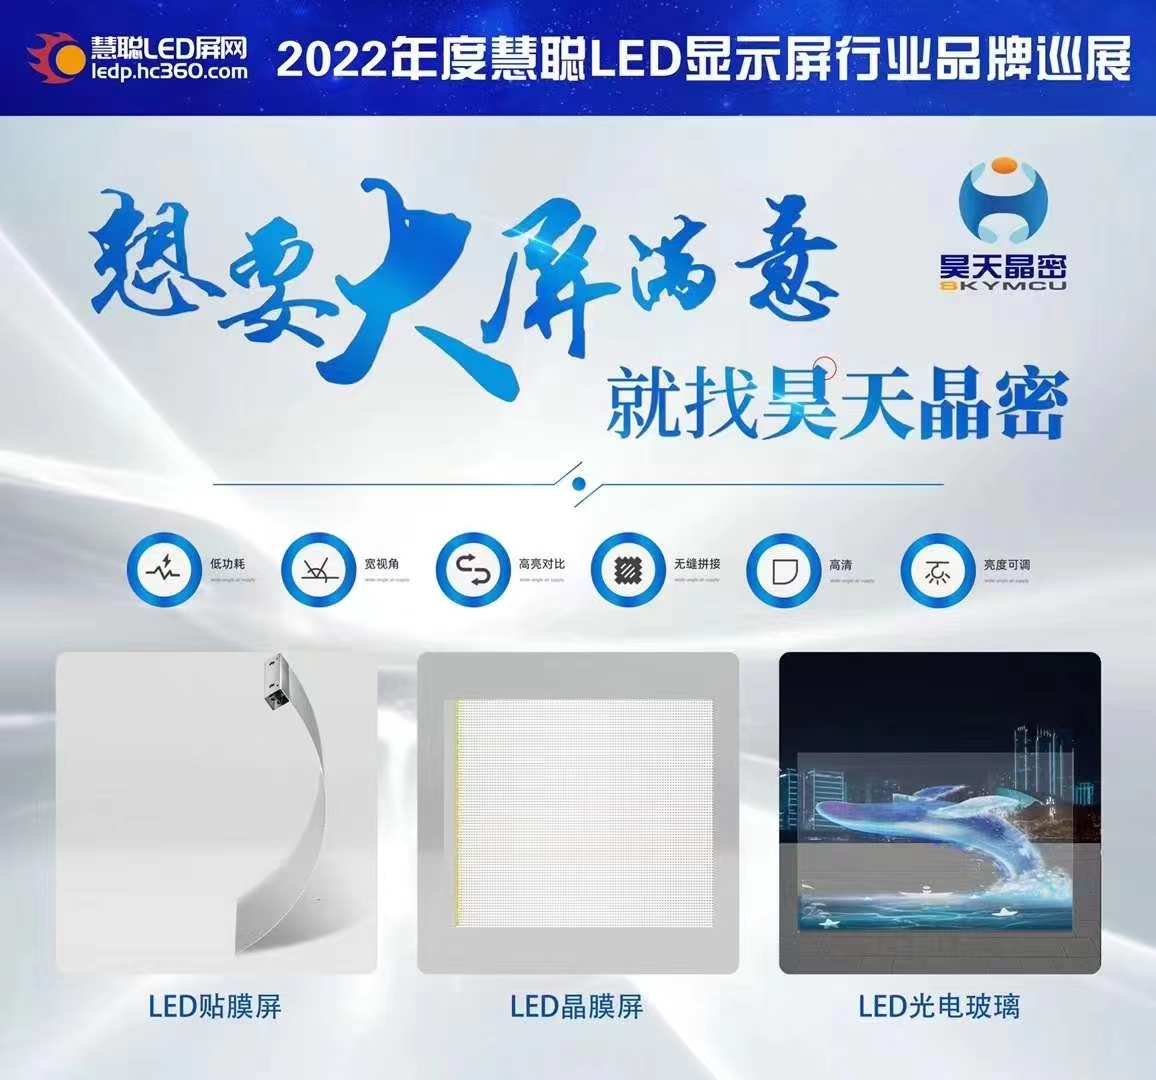 2022昊天電子產品全國巡展--武漢站 “定制透明方案一體化解決服務商，讓透明不拘一格”